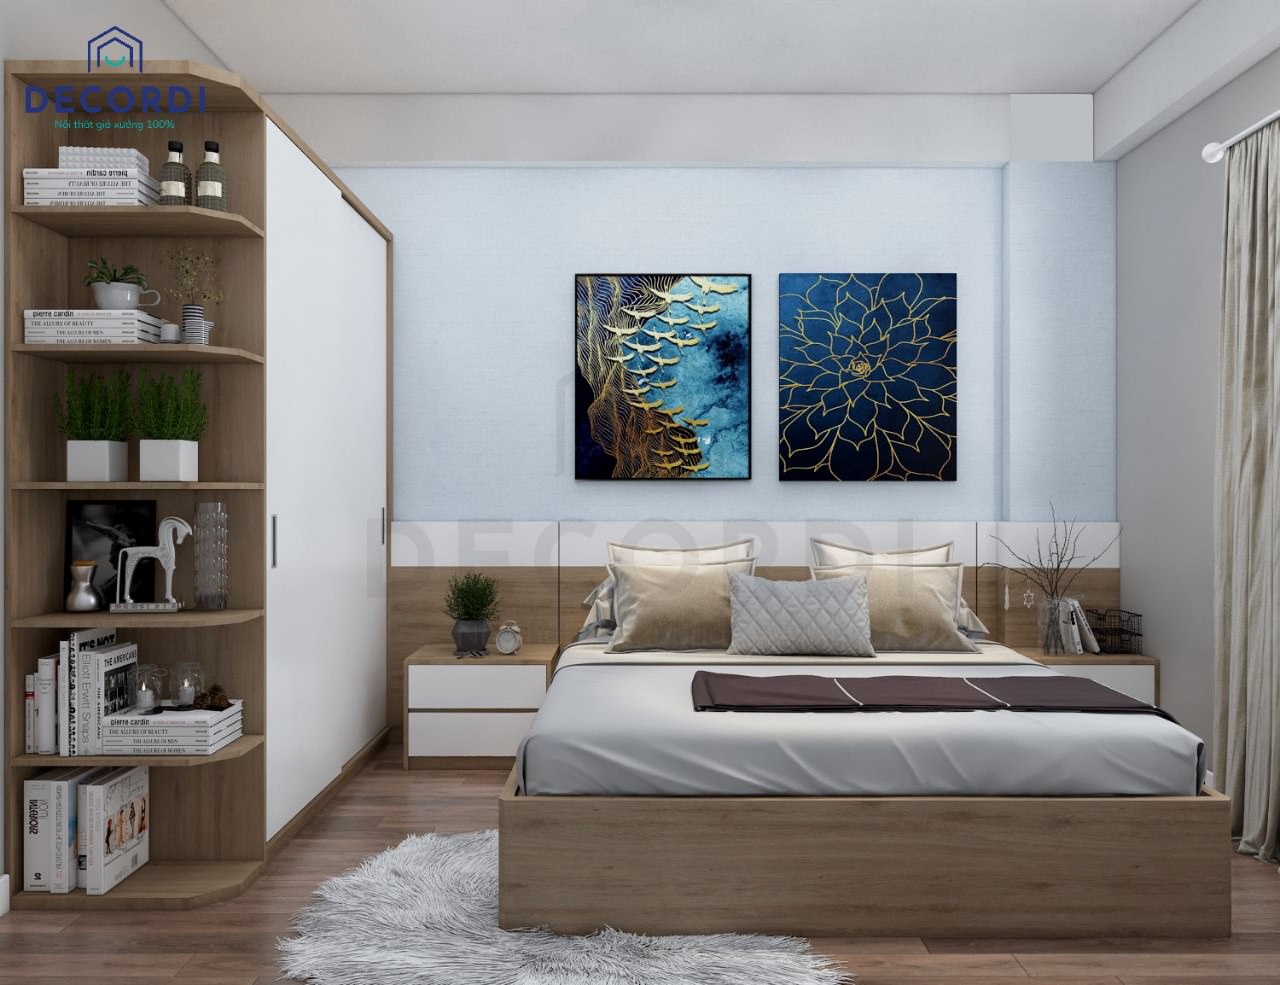 Phòng ngủ master nổi bật với tranh treo tường độc đáo làm điểm nhấn cho không gian